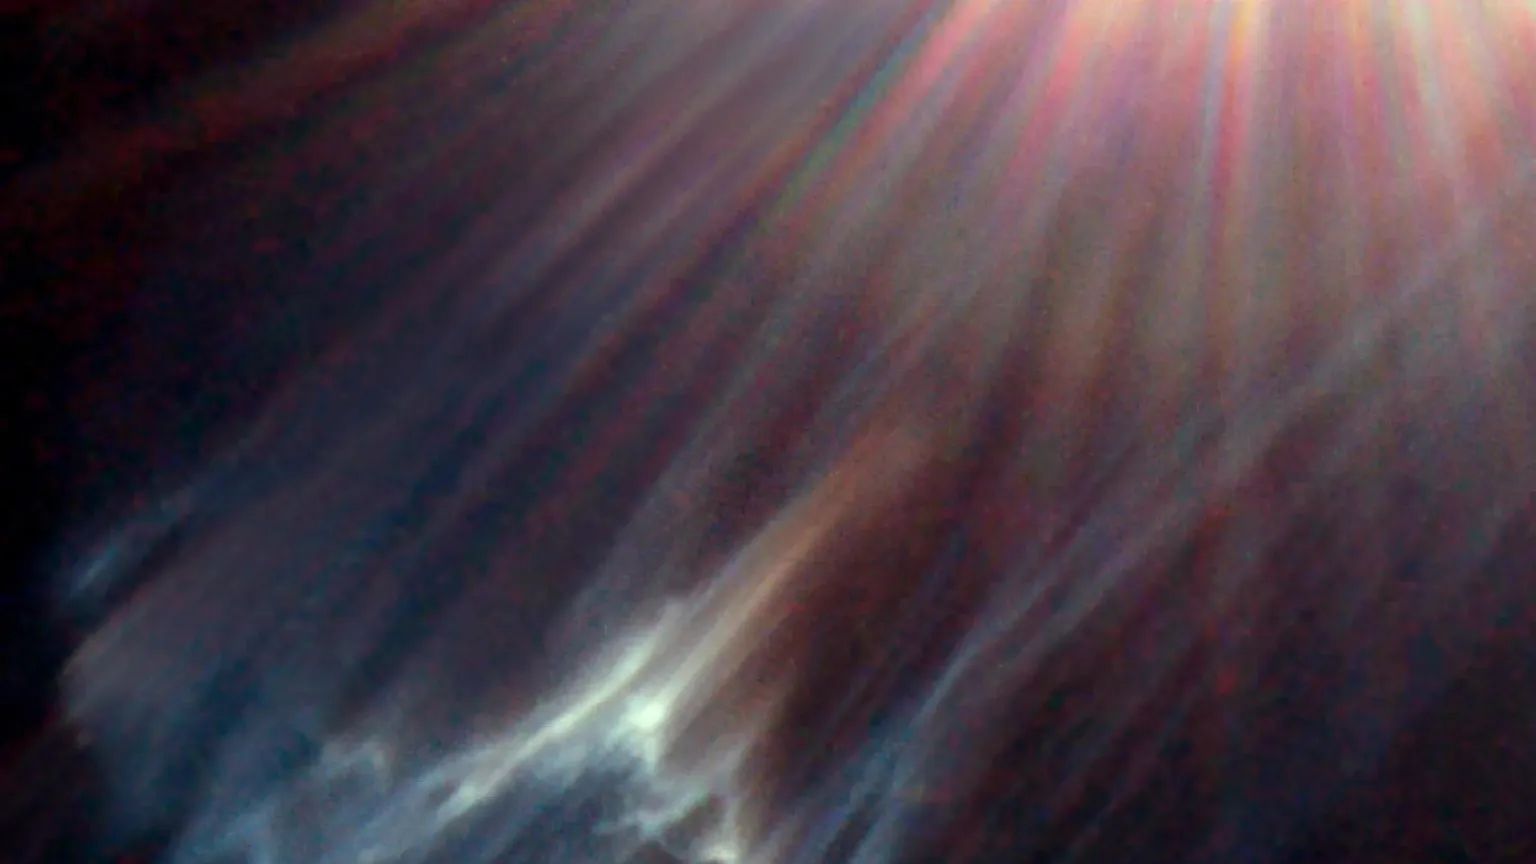 Nesta imagem, vê-se uma nuvem interestelar sendo destruída por uma das estrelas mais brilhantes do Aglomerado das Plêiades (Messier 45 ou M45), localizado a cerca de 445 anos-luz de distância, na Constelação de Touro. A luz da estrela é refletida na superfície de nuvens negras de gás frio misturadas com poeira. Isso produz uma nebulosa de reflexão. Comumente chamado de Sete Irmãs, M45 é conhecido como um aglomerado estelar aberto. Contém mais de mil estrelas que estão ligadas pela gravidade, mas é visualmente dominada apenas por algumas das mais brilhantes. Uma dessas estrelas, Merope, está localizada fora do quadro desta imagem, no canto superior direito. Os raios de luz coloridos que emanam da estrela são um fenômeno óptico produzido dentro do telescópio